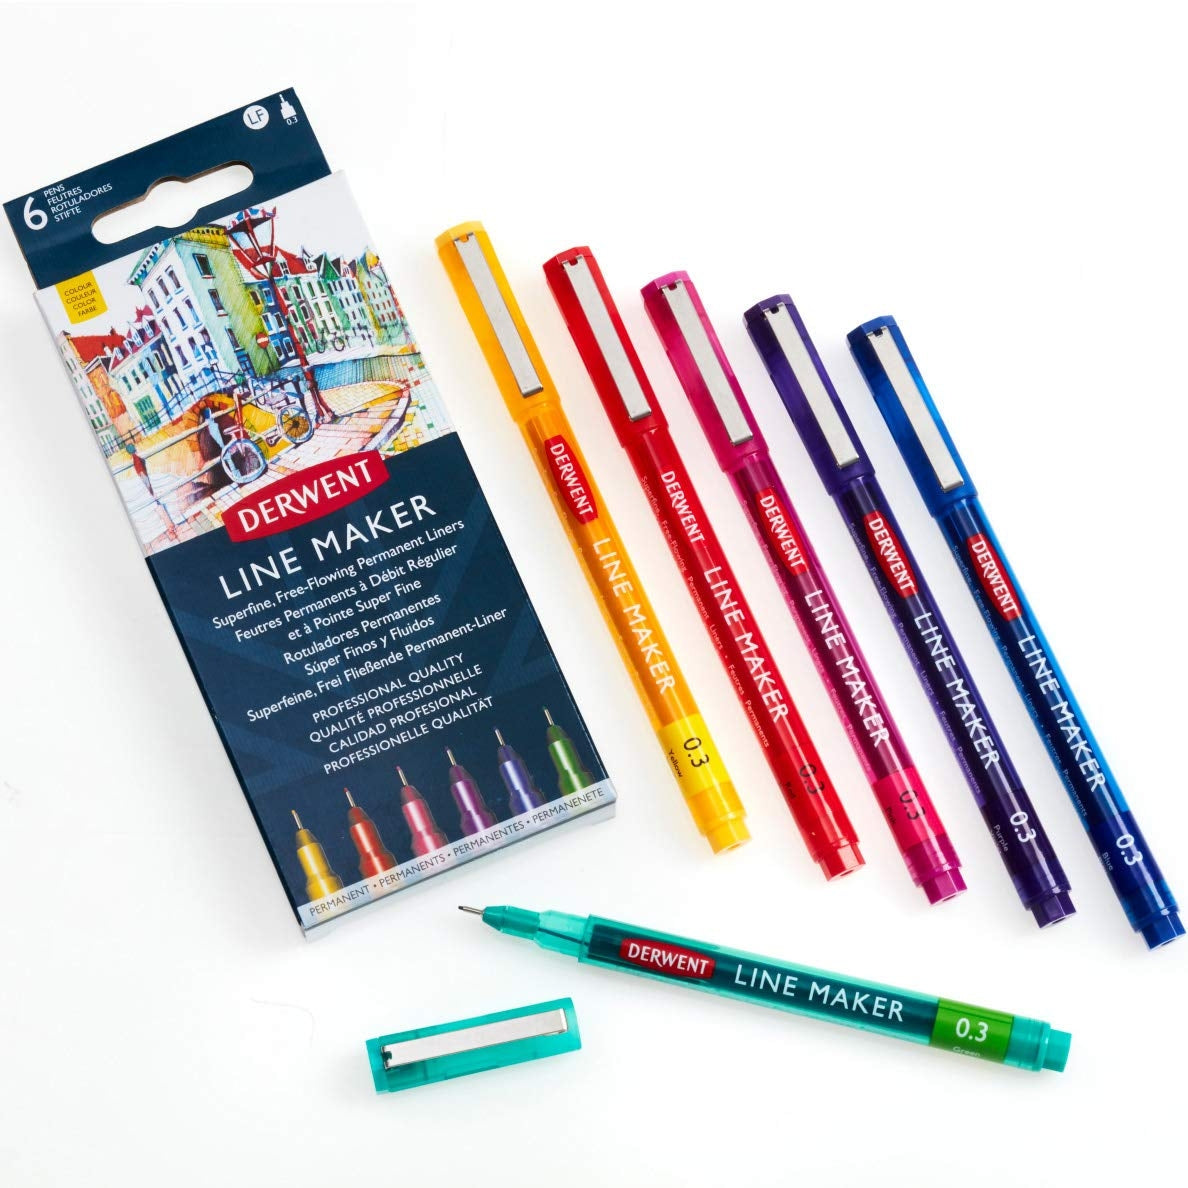 Derwent - Line Maker Pens - 6x Assorted Colours - Nib size 0.3mm